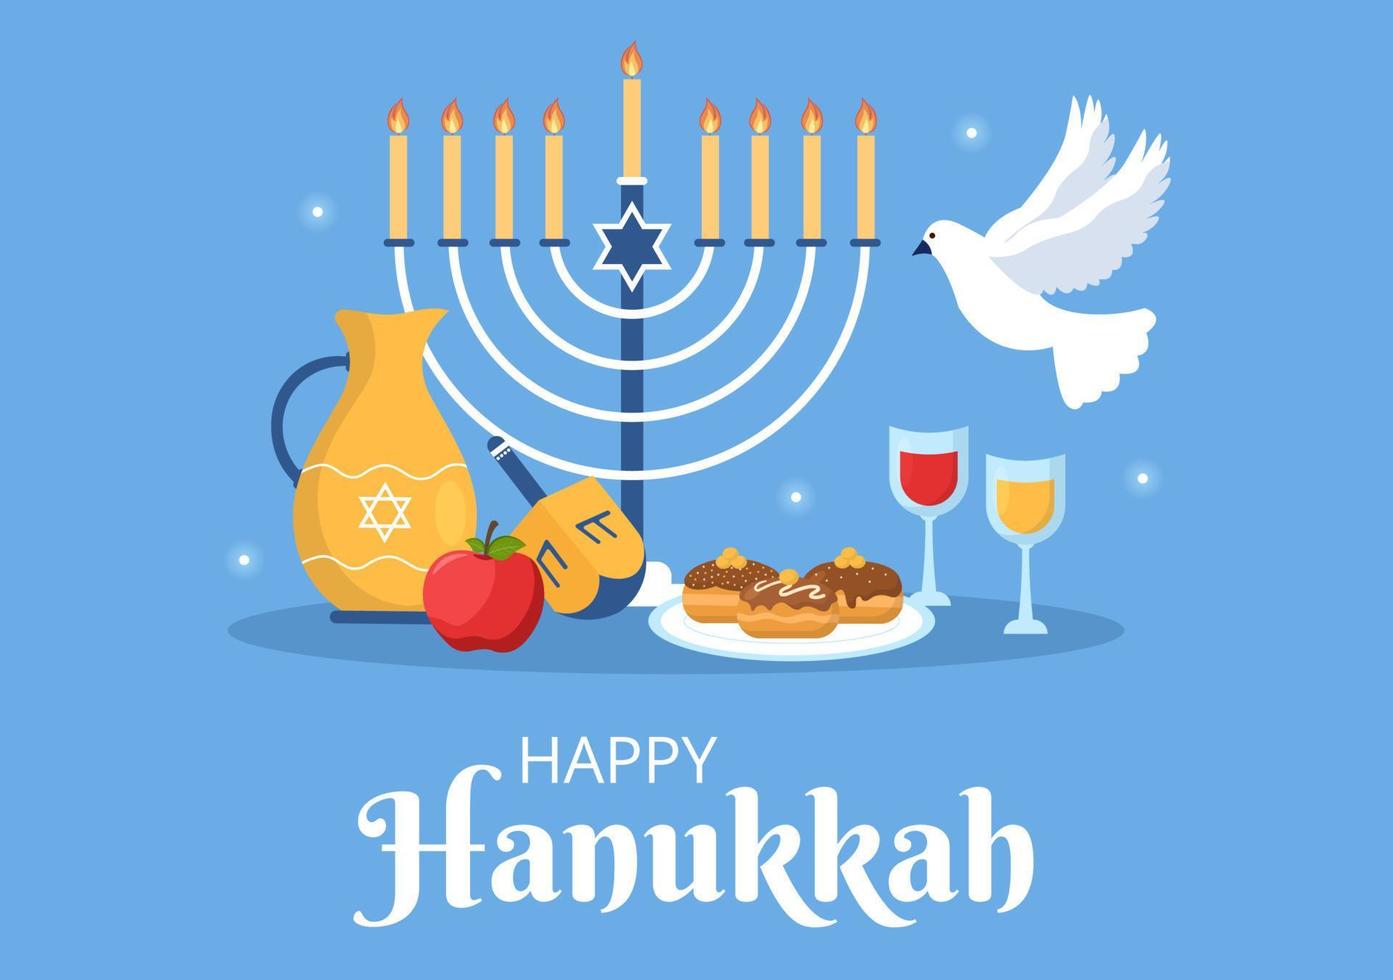 glückliche hanukkah jüdische feiertagsvorlage handgezeichnete flache illustration der karikatur mit menorah, sufganiyot, dreidel und traditionellen symbolen vektor